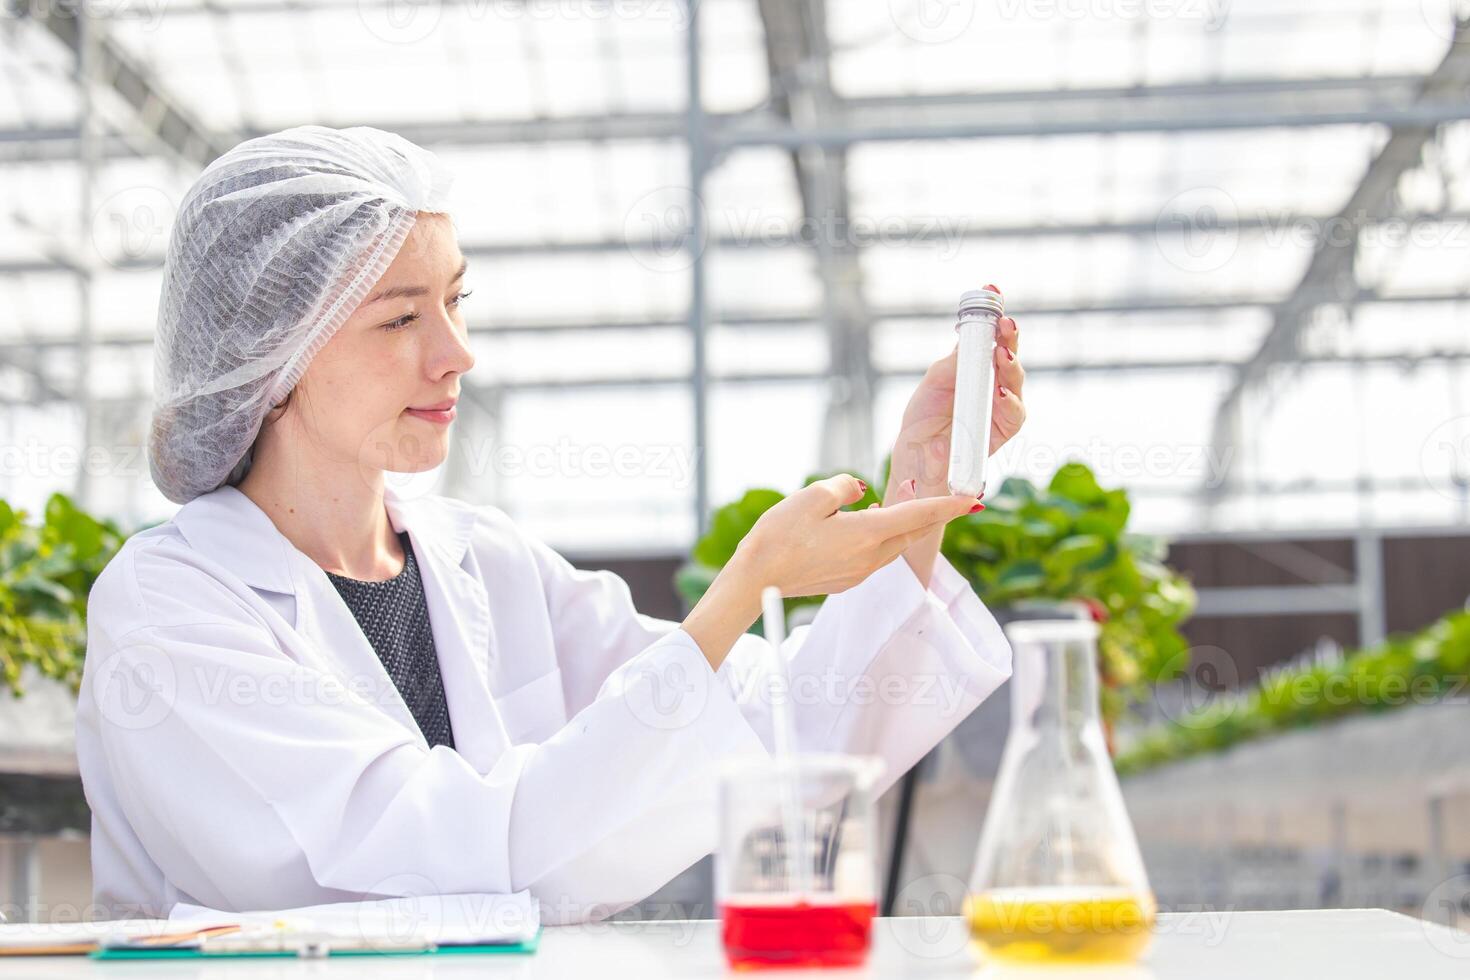 forskare arbetssätt i organisk lantbruk bruka forskning ny kemisk formel extrahera från växt för medicinsk begrepp. foto